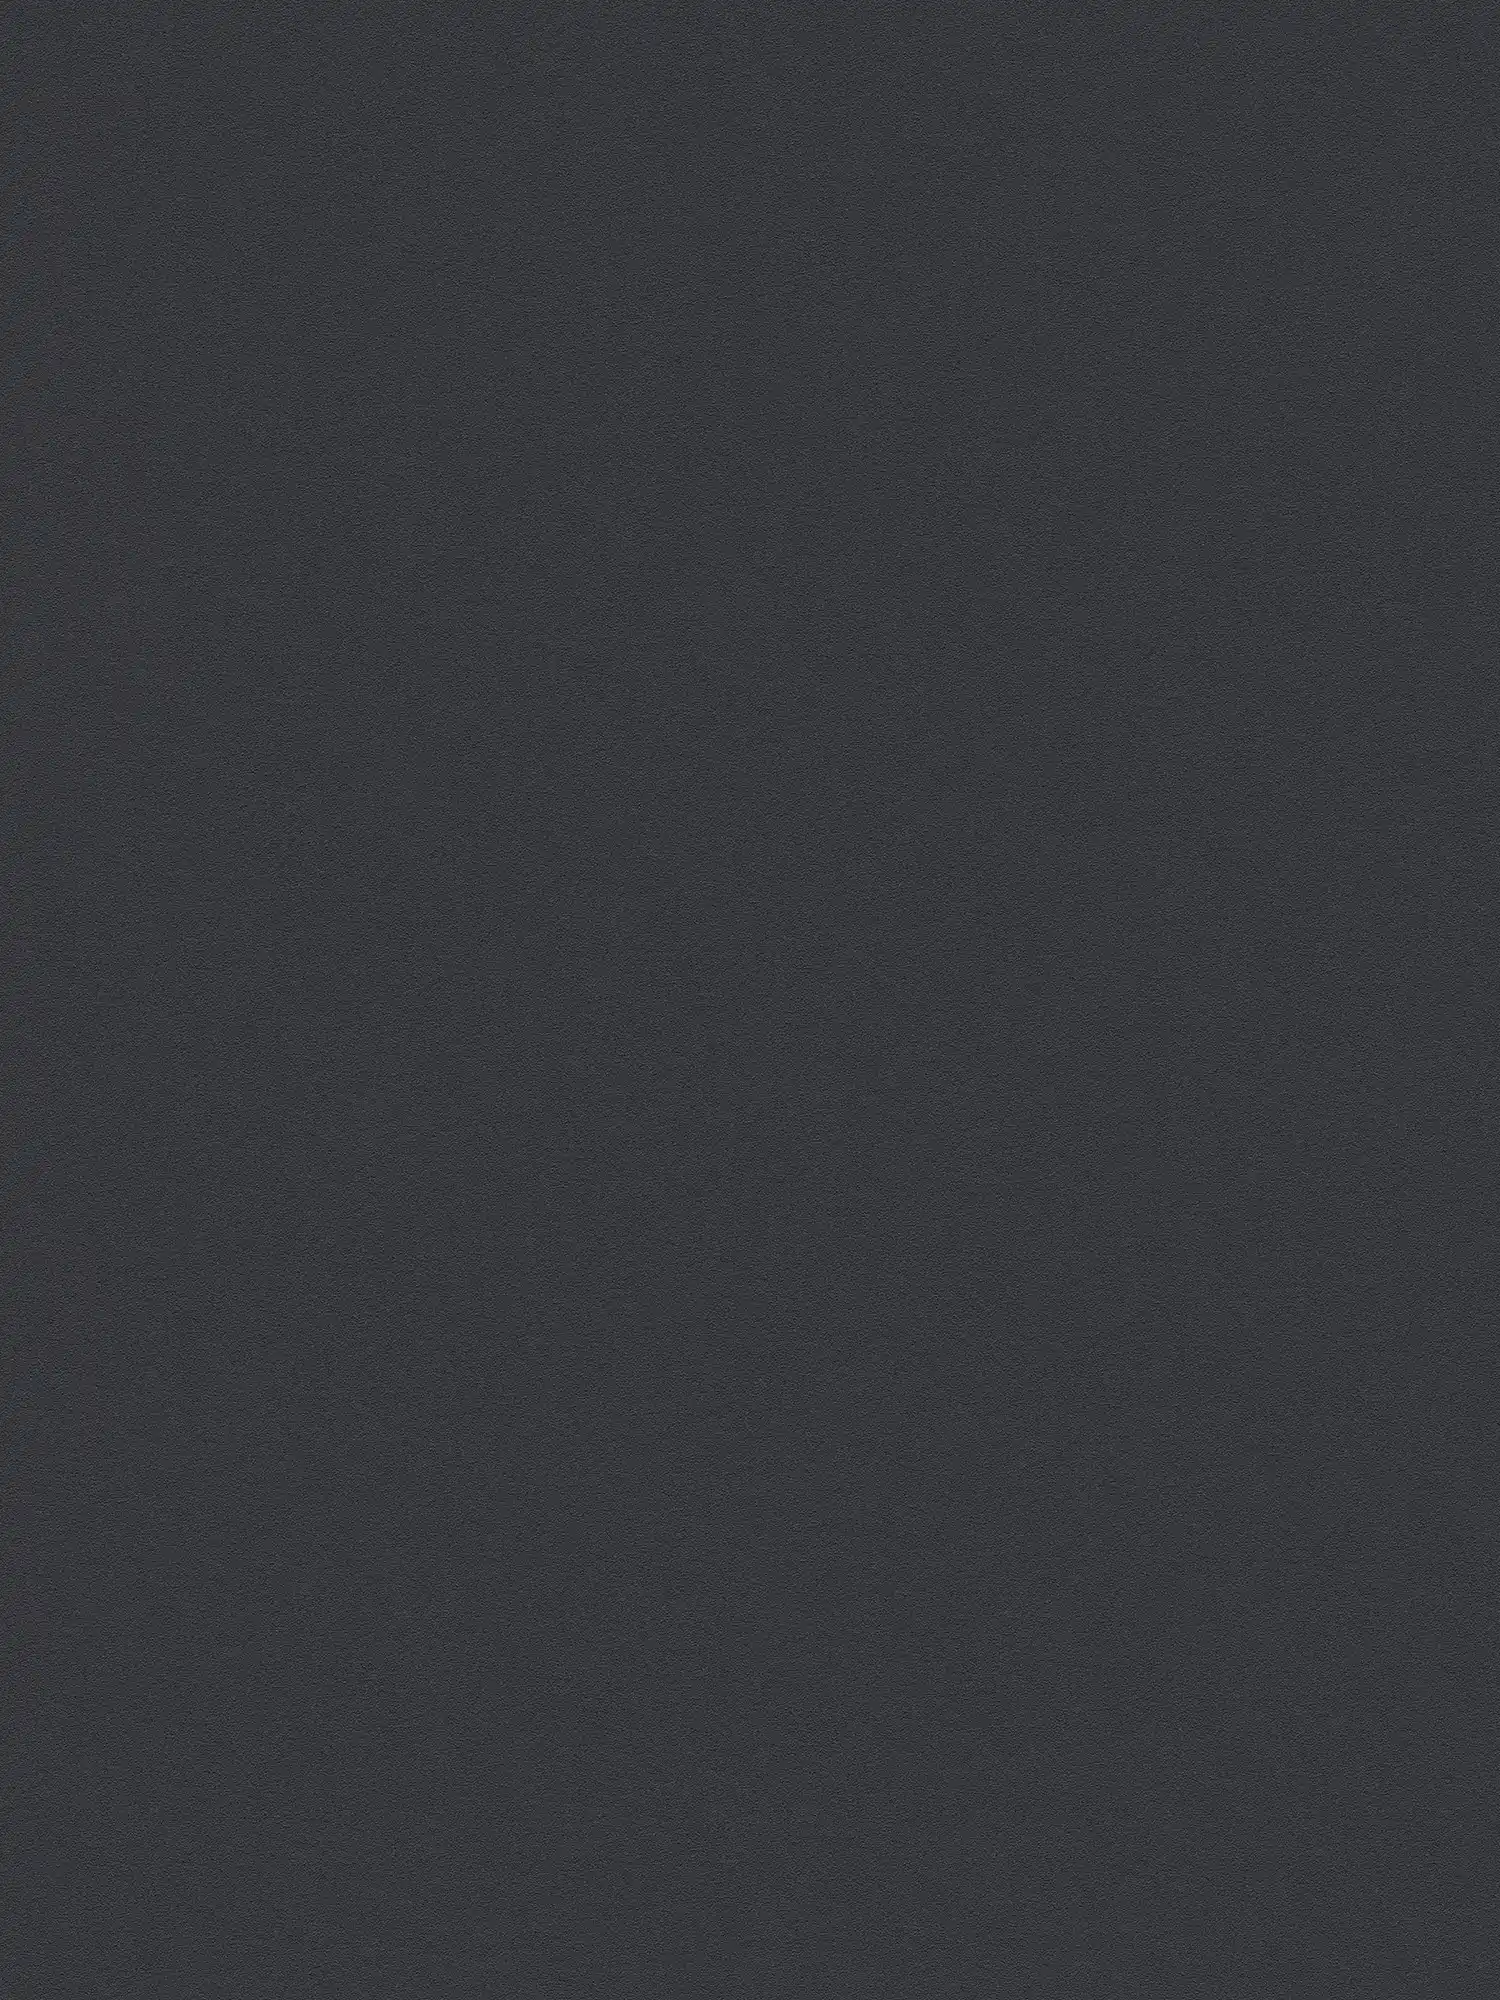 Seidenmatte Vliestapete Schwarz einfarbig mit flacher Struktur
